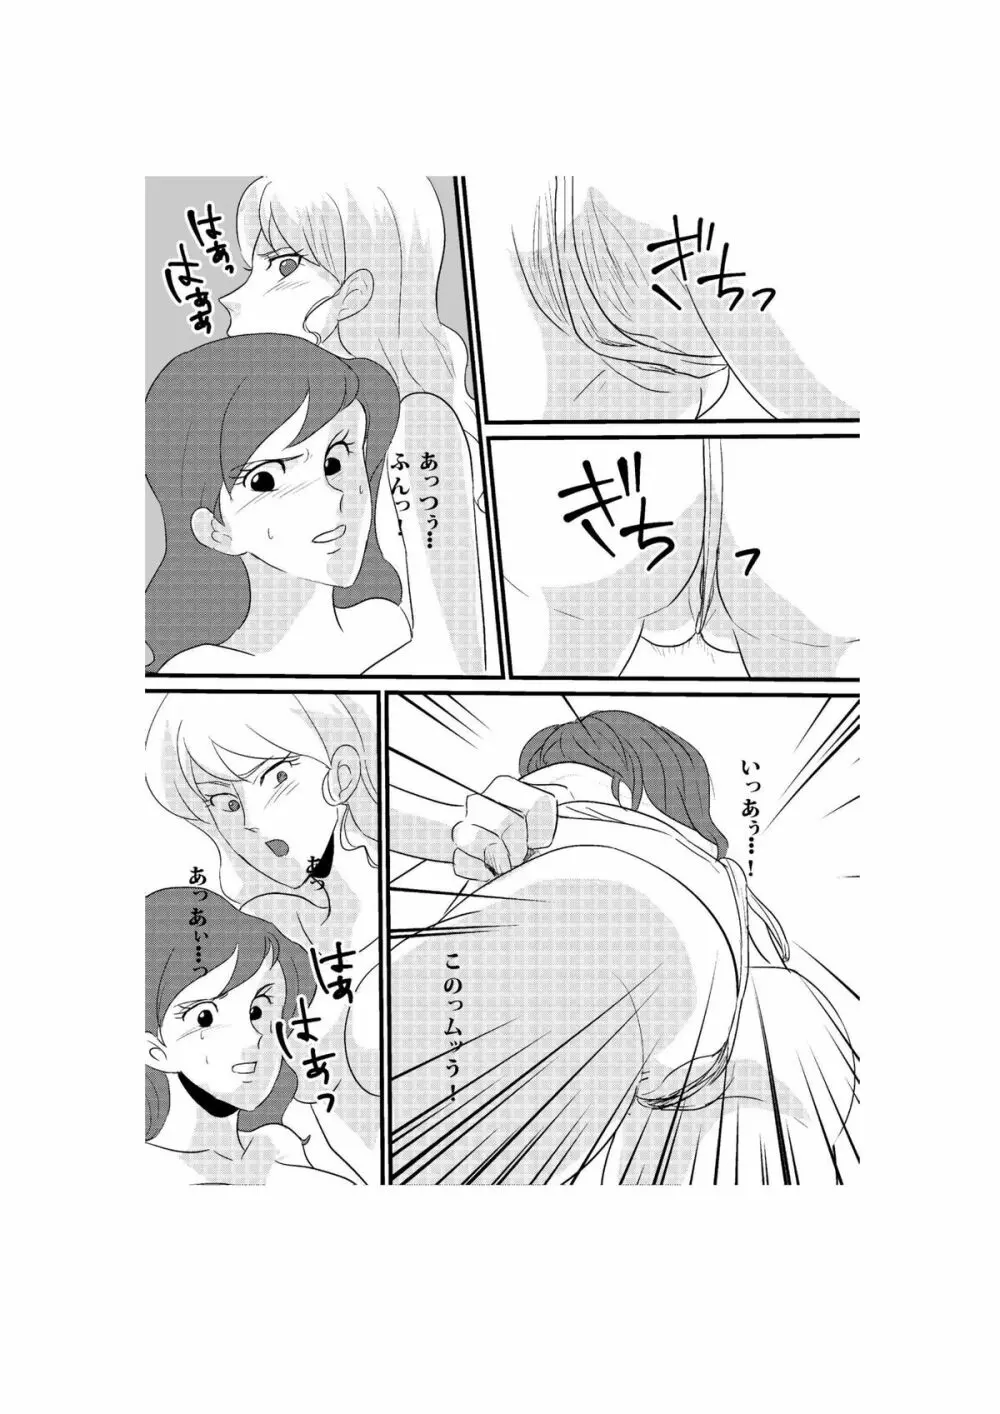 Fushi no Kyouten Ureta Onna no Tatakai - Fujiko VS Emmanuelle - page14